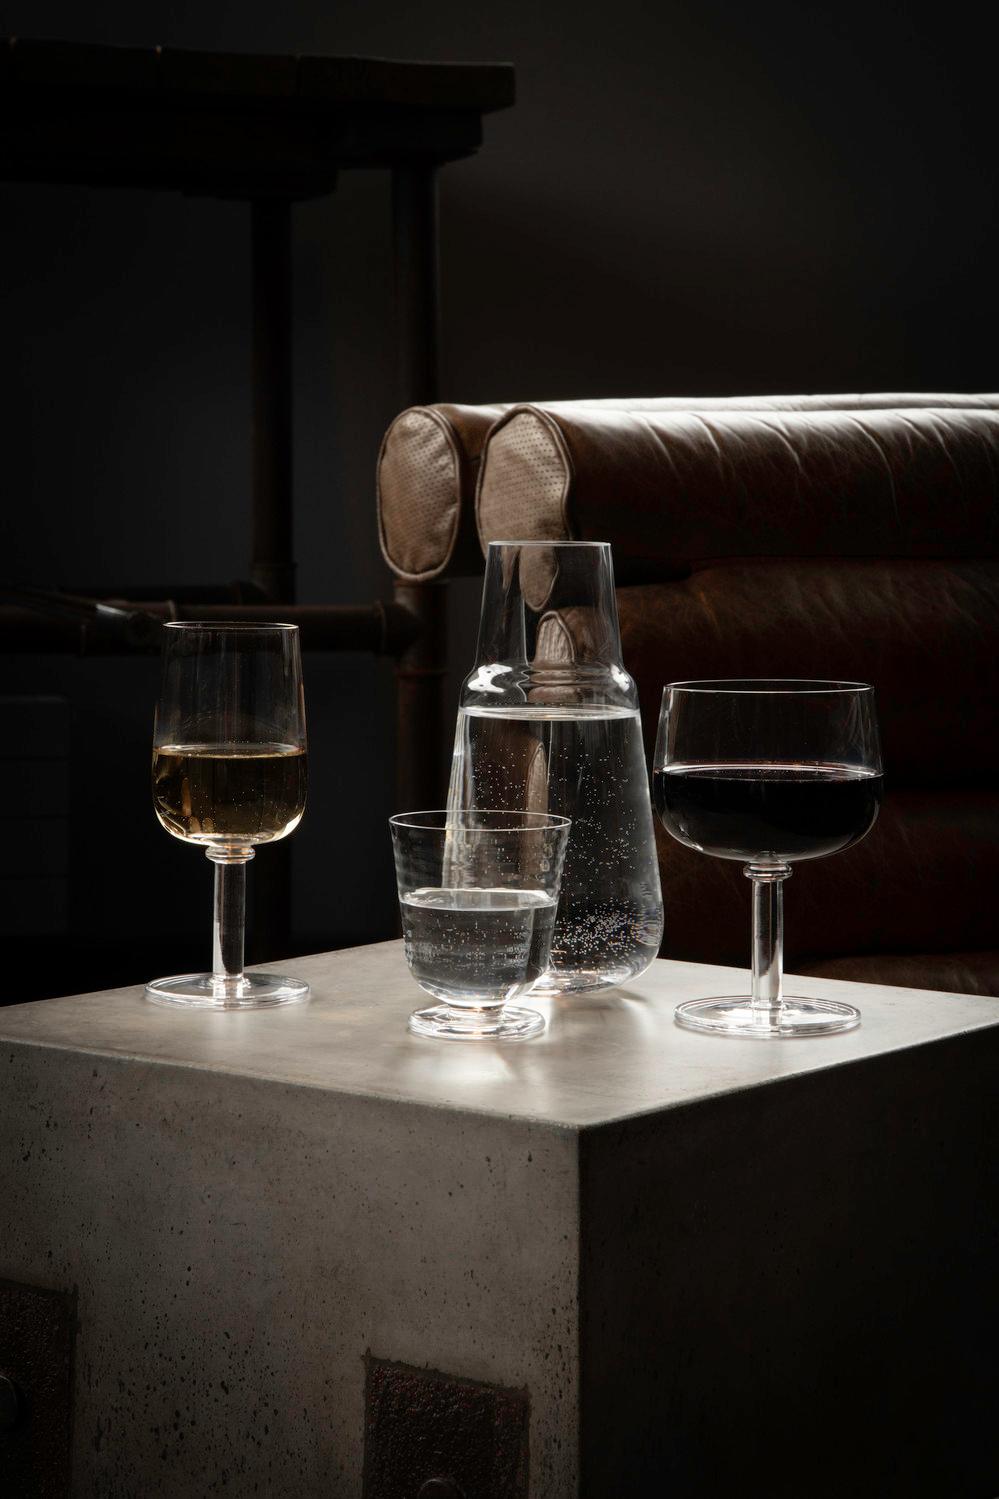 Das kleine Glas aus der Viva-Kollektion von Kosta Boda ist - unserer Meinung nach - ein Wasserglas, aber man kann es natürlich für alles Mögliche verwenden. Vielleicht Saft? Multitasking in seiner besten Form. Entwurf von Matti Klenell.
